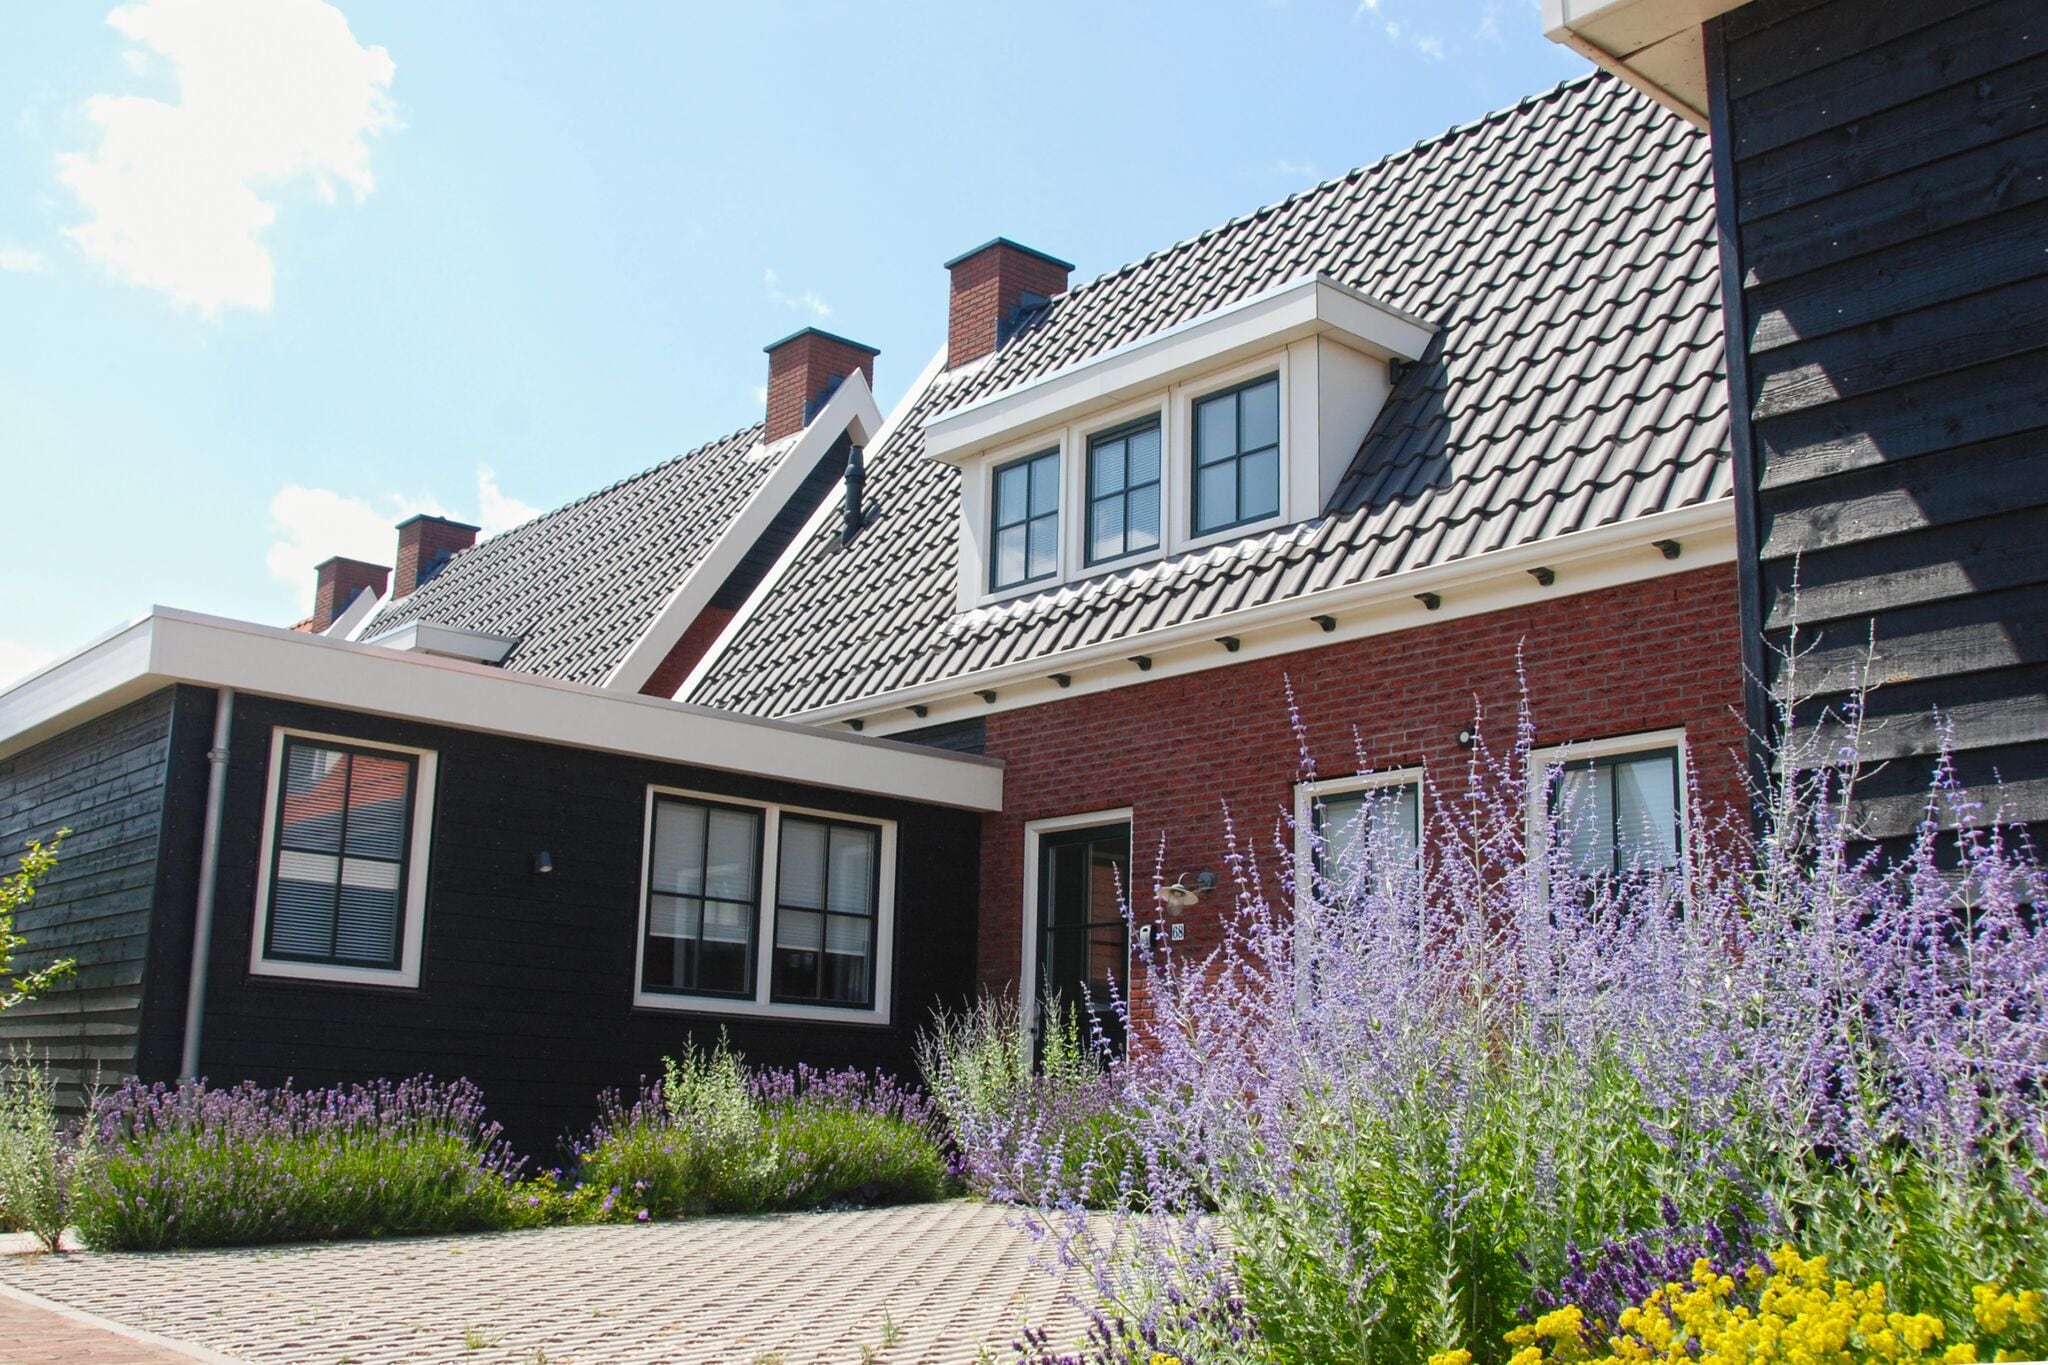 Beautiful holiday home in Colijnsplaat with garden